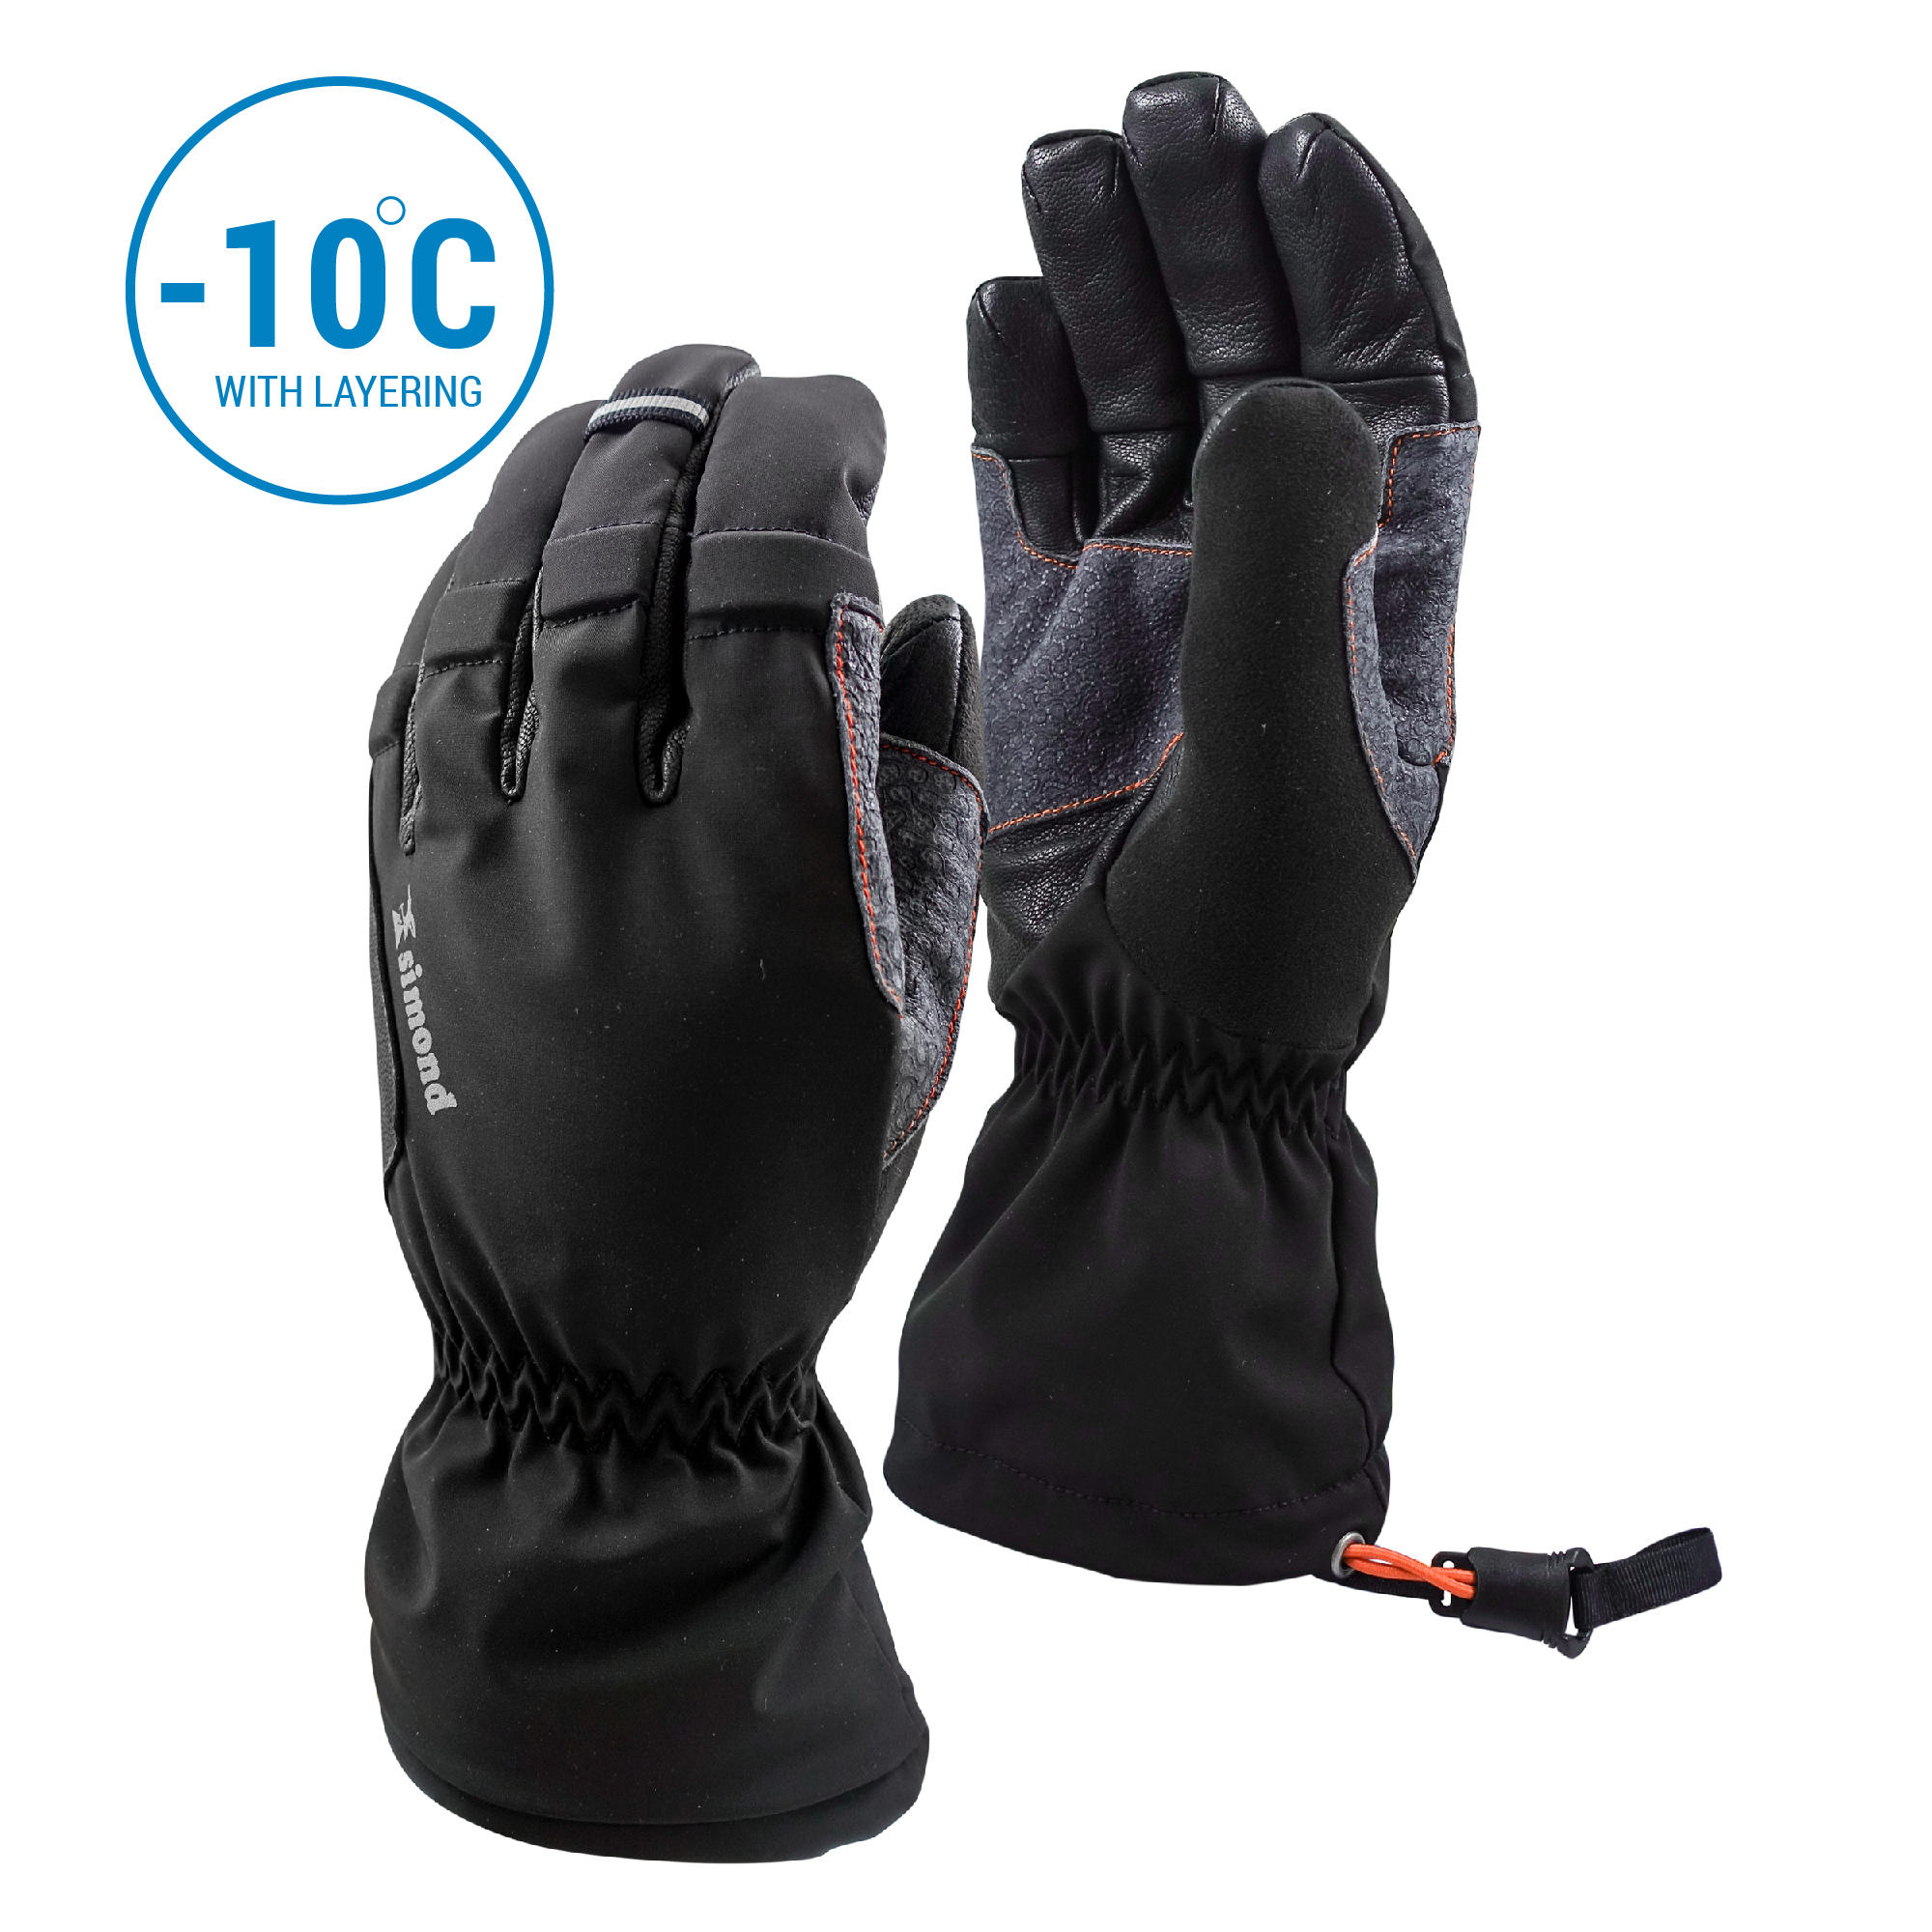 Winter Gloves - Buy Winter Gloves for 